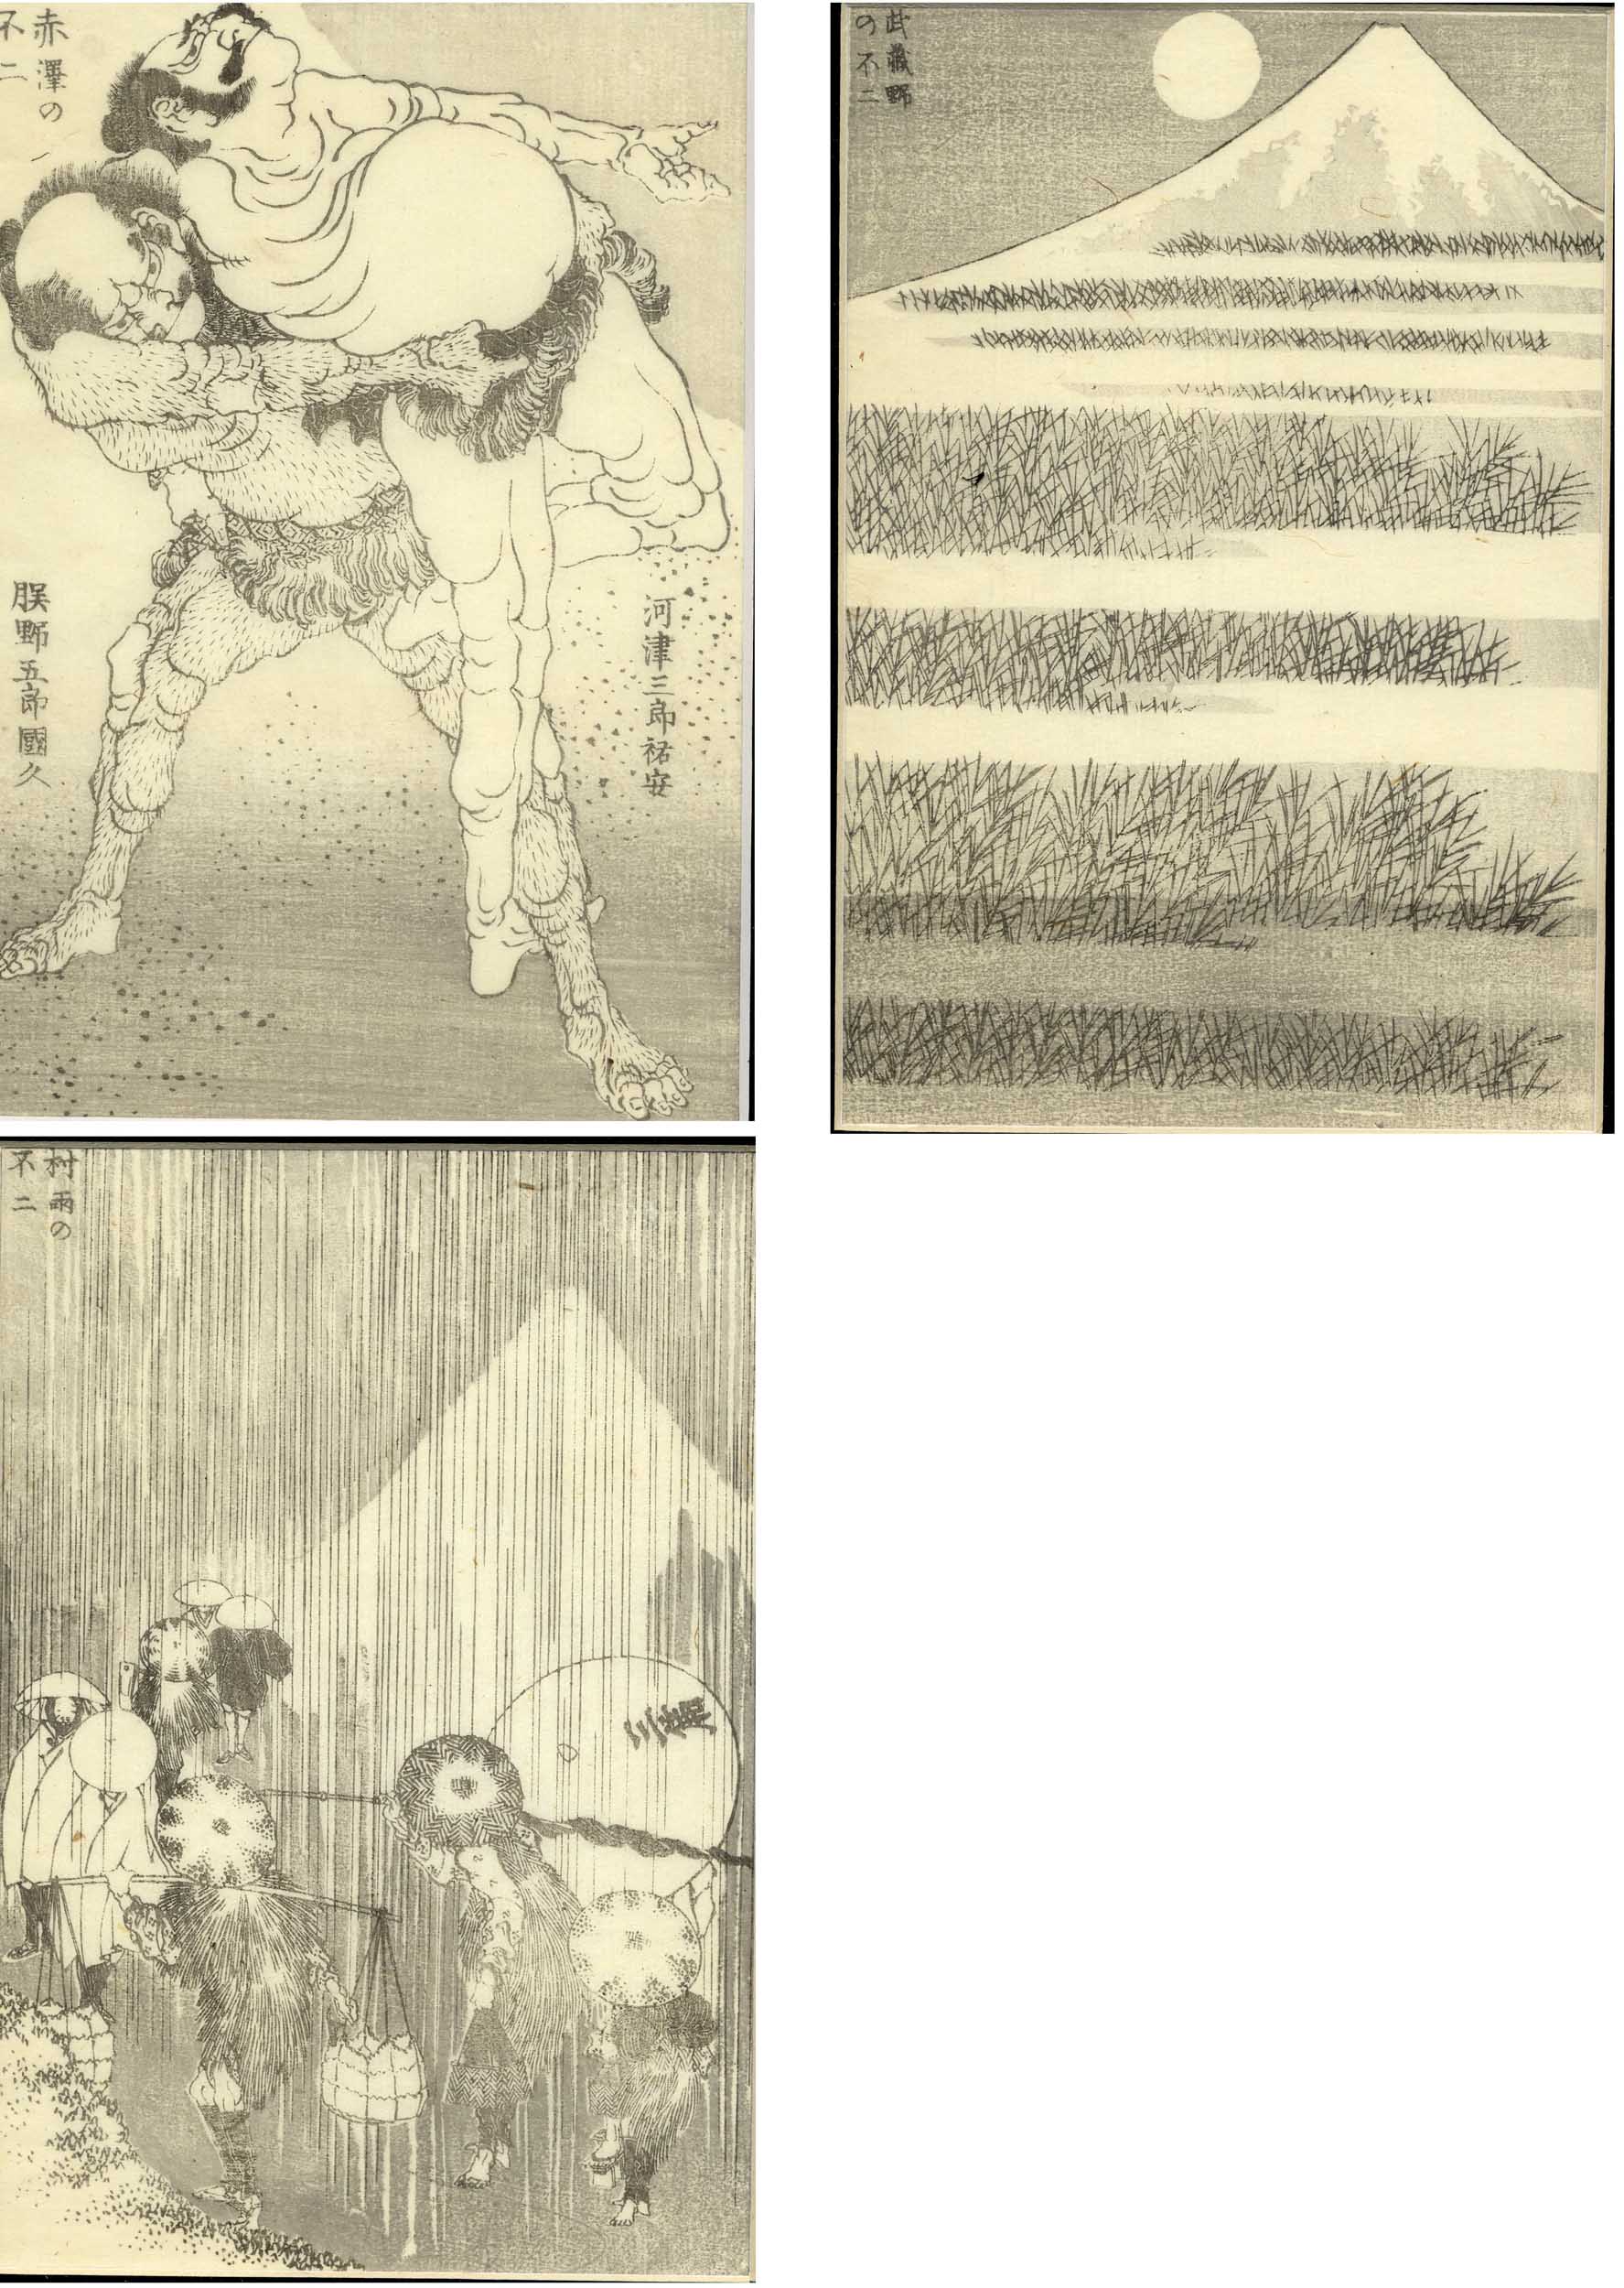 Hokusai, Katsushika  1760-1849  Landschaften mit dem Fuji-Berg (Drei Einzelbuchseiten)  Nebelbänke